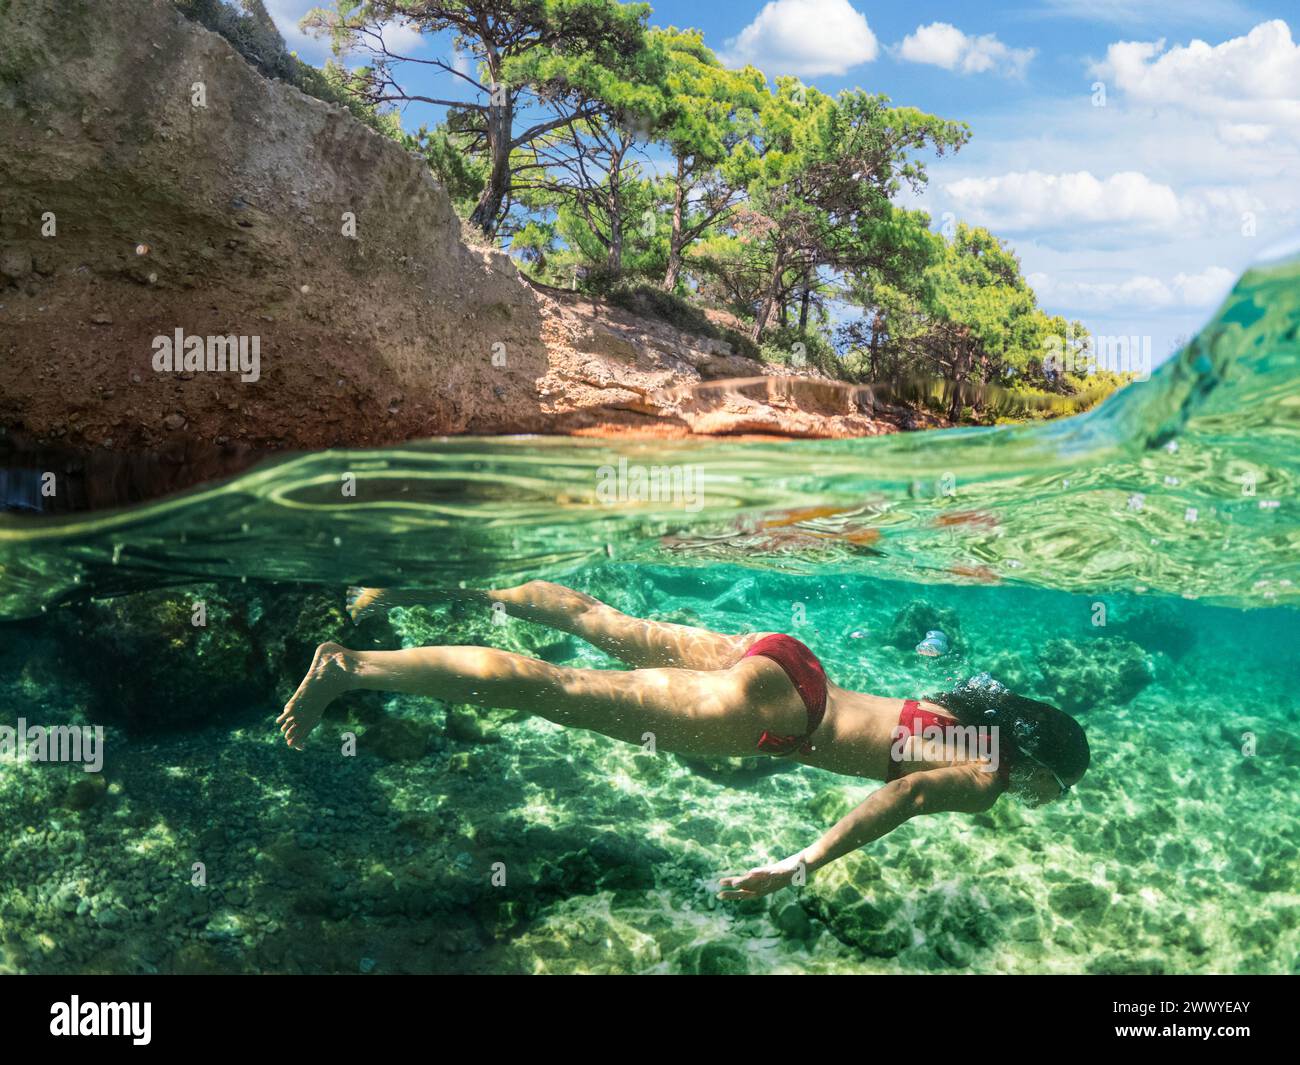 Donna subacquea sta facendo snorkeling su una bellissima spiaggia di mare. La metà inferiore dell'immagine è occupata dal fondale marino, la metà superiore dalla costa e dal cielo. Foto Stock